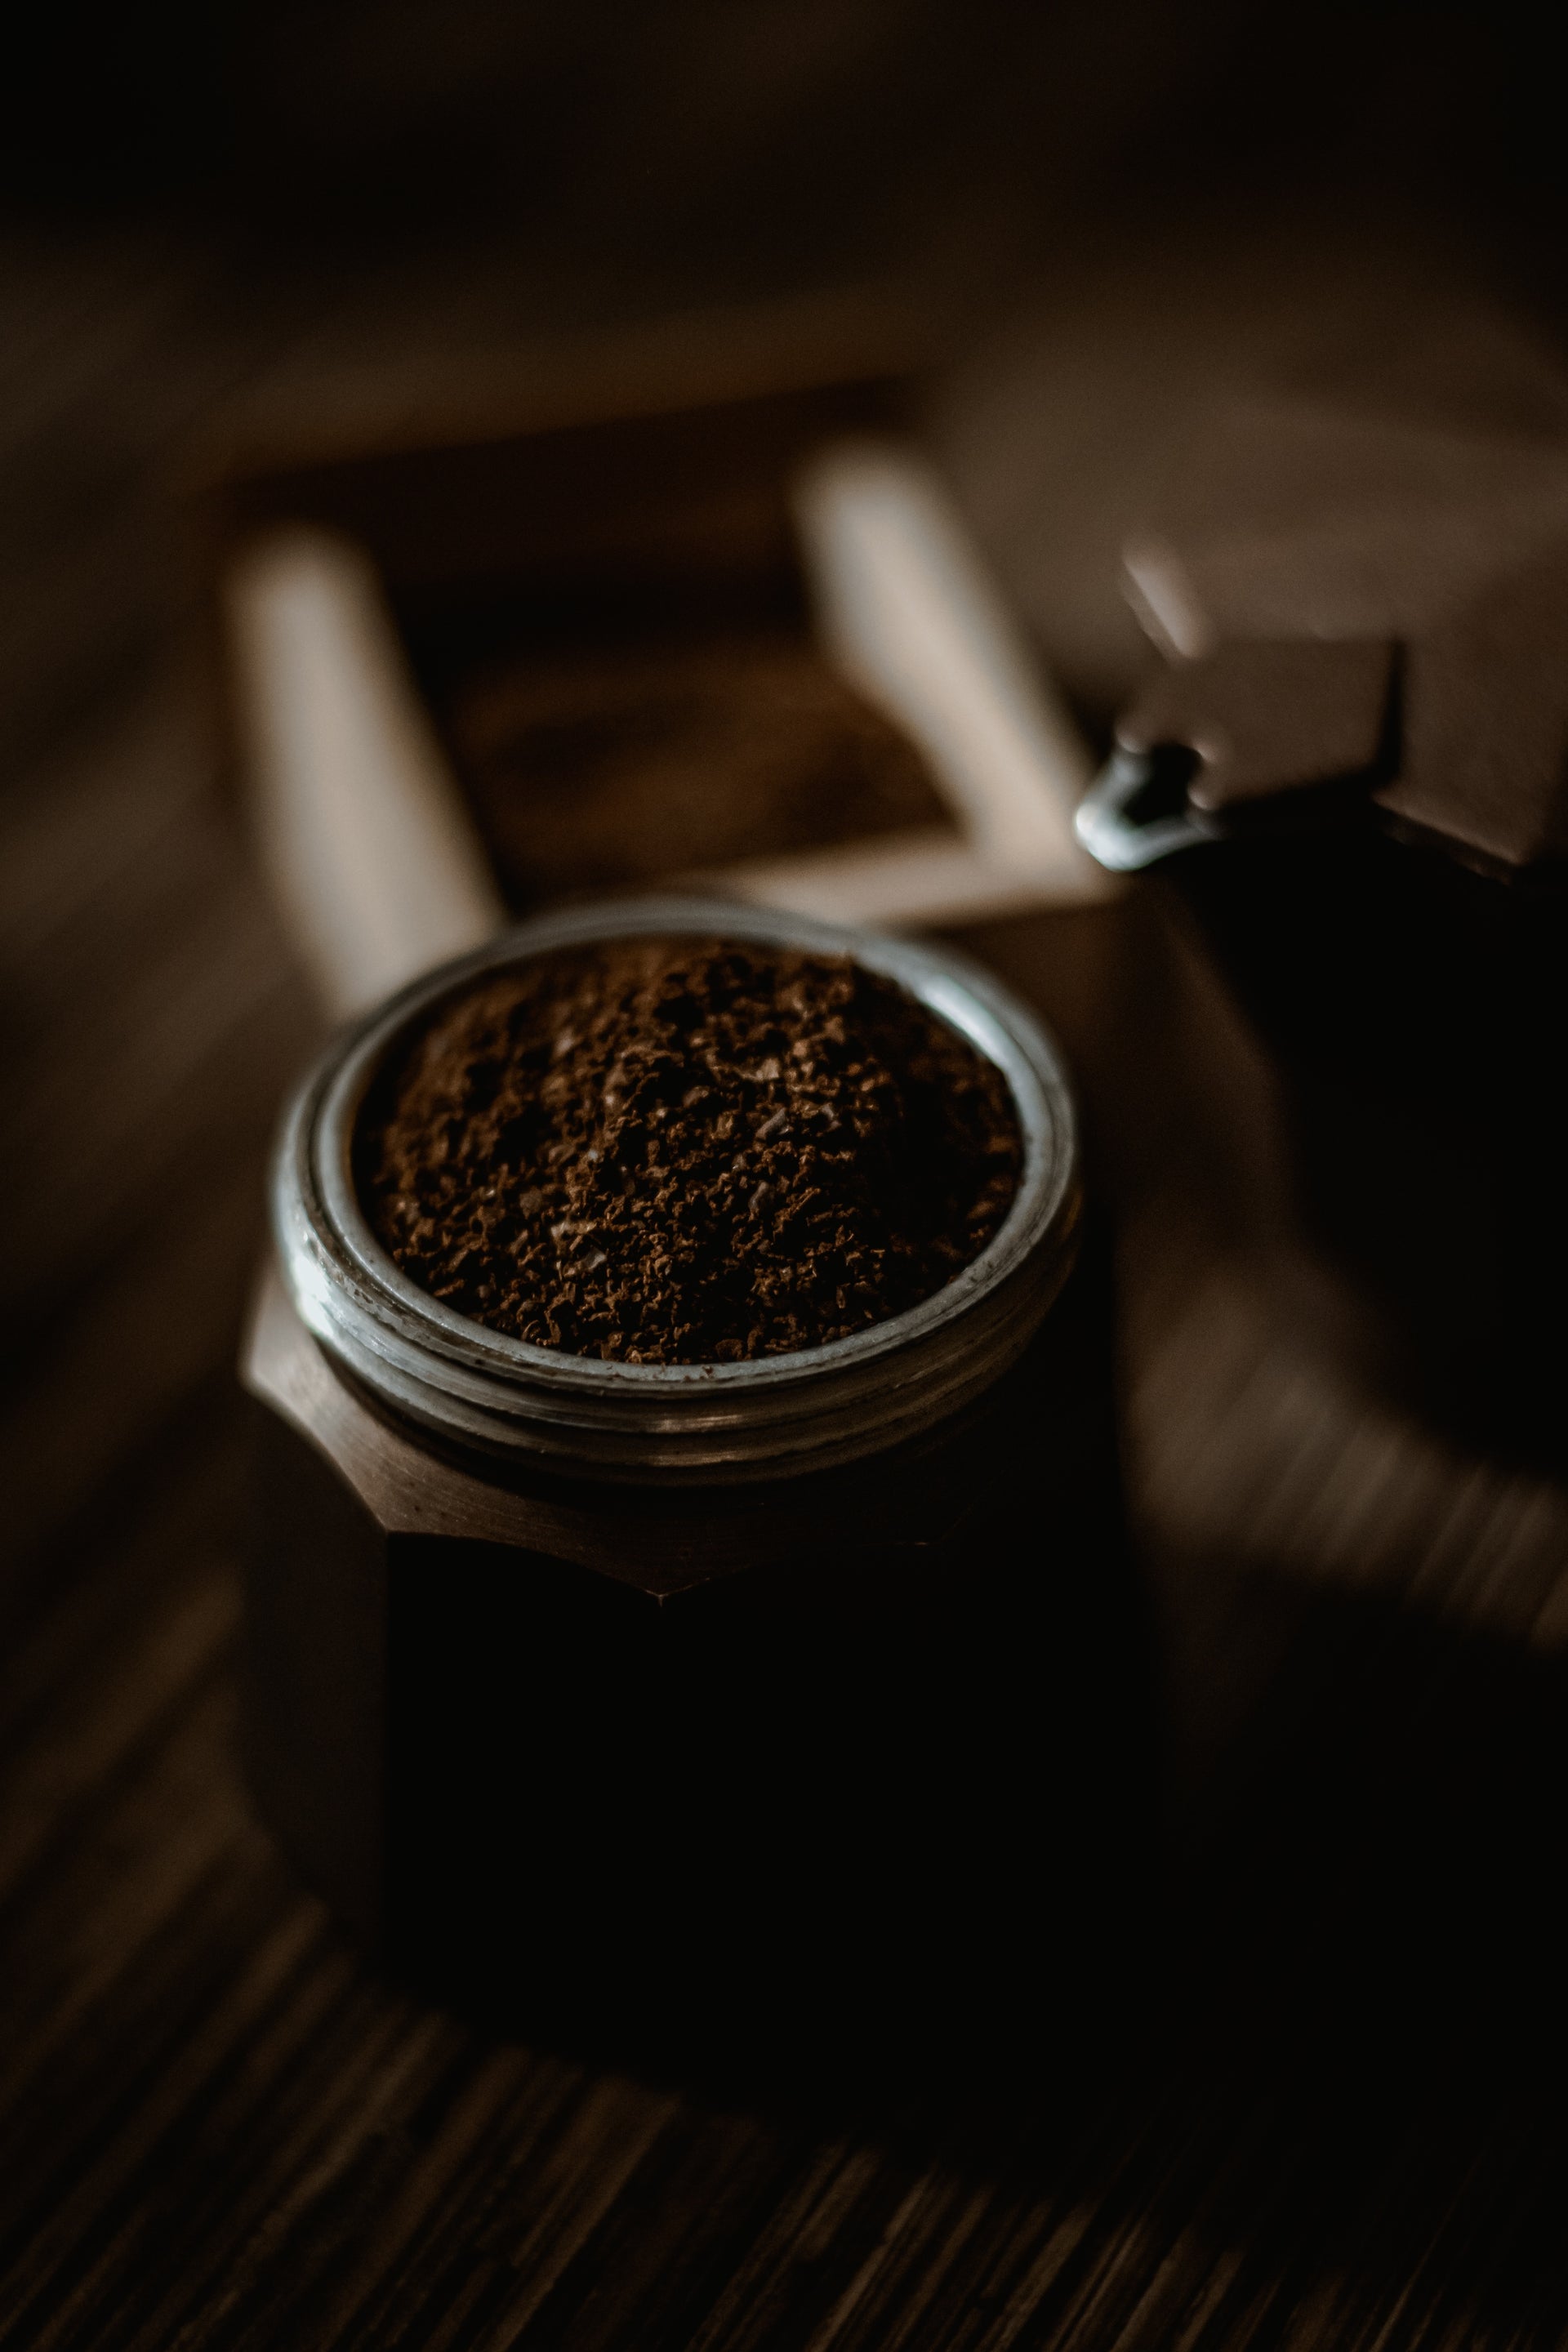 Café molido natural. Próximamente  SOLO Caffe – SOLO Caffè monorigine ES